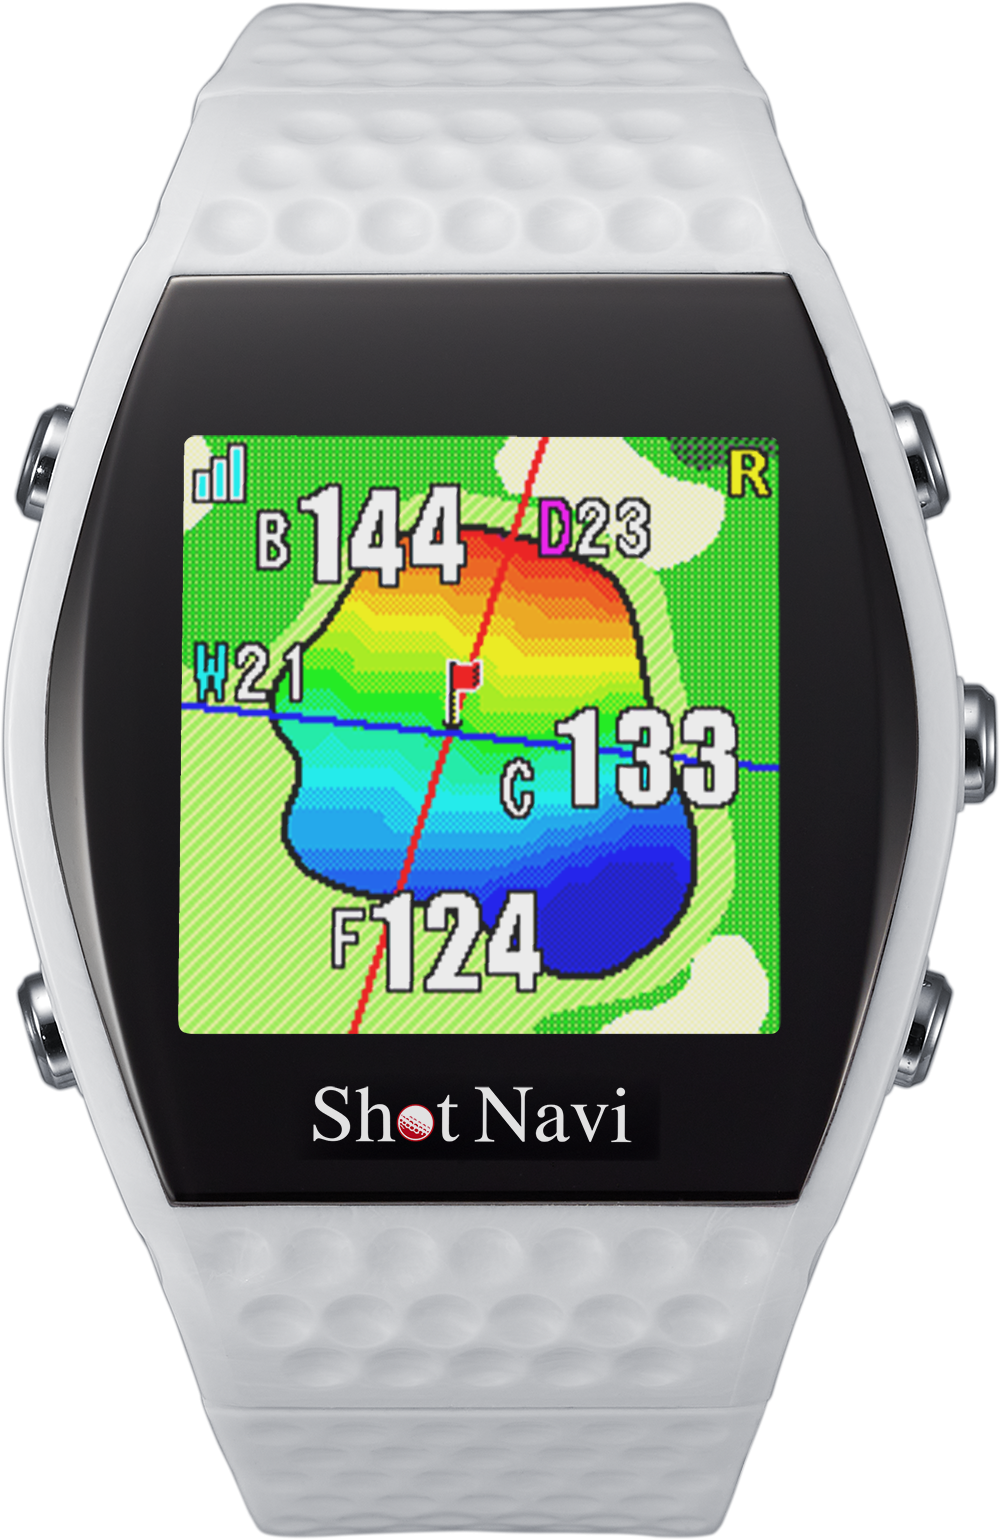 テクタイト、腕時計型GPSゴルフナビ 新機能の
「Green Eye」を搭載したShot Navi「INFINITY」を3/1発売